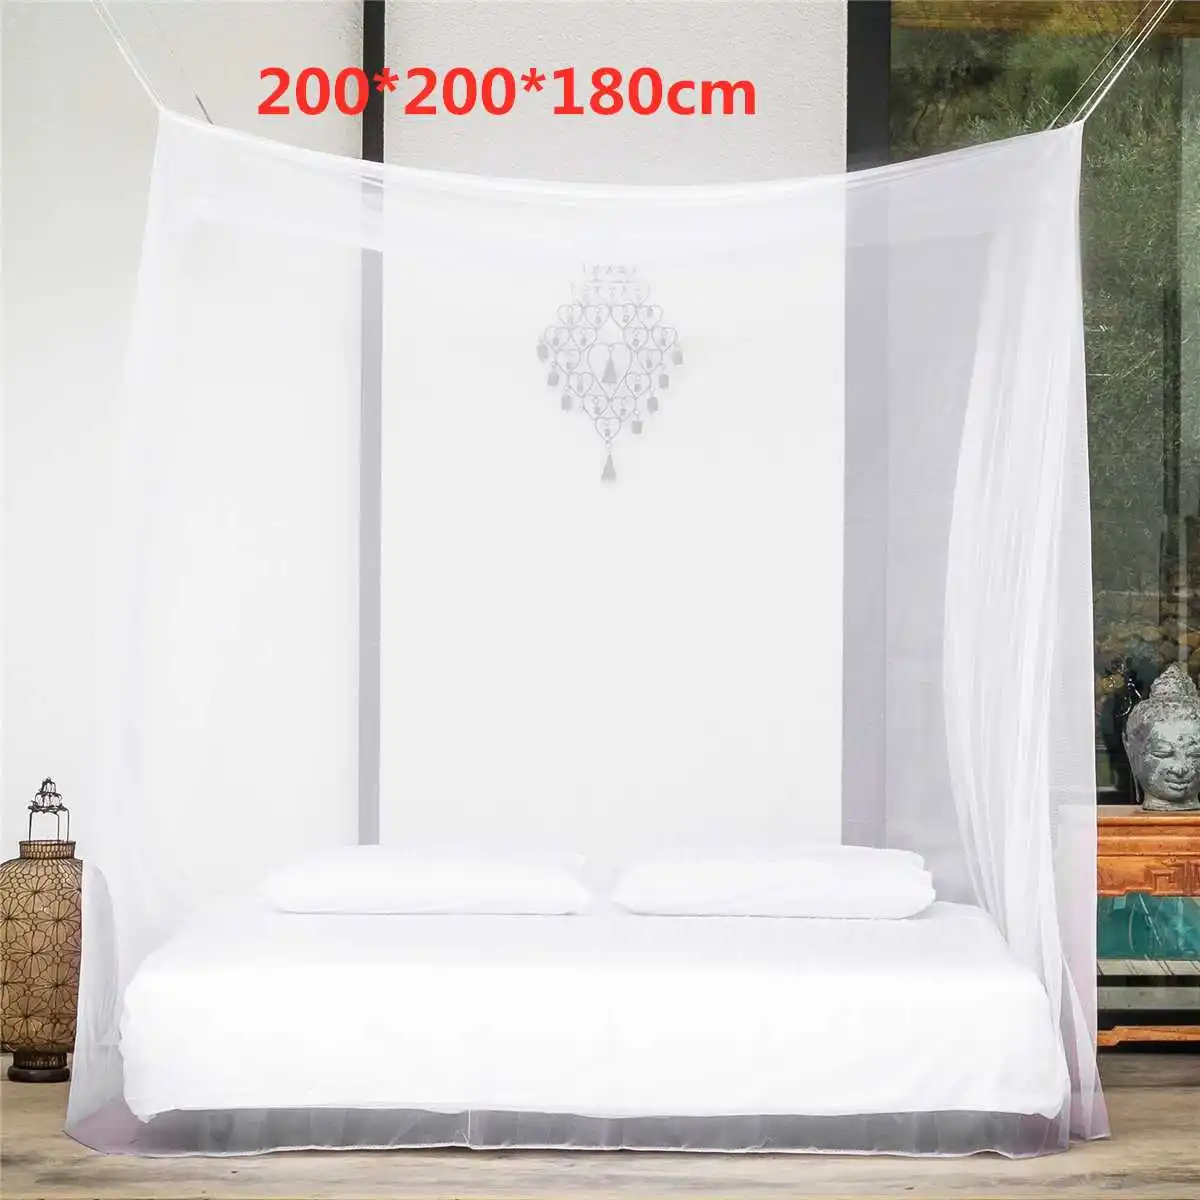 200x200x180 см туристическая палатка для кемпинга с противомоскитной сеткой от насекомых, навес для кровати